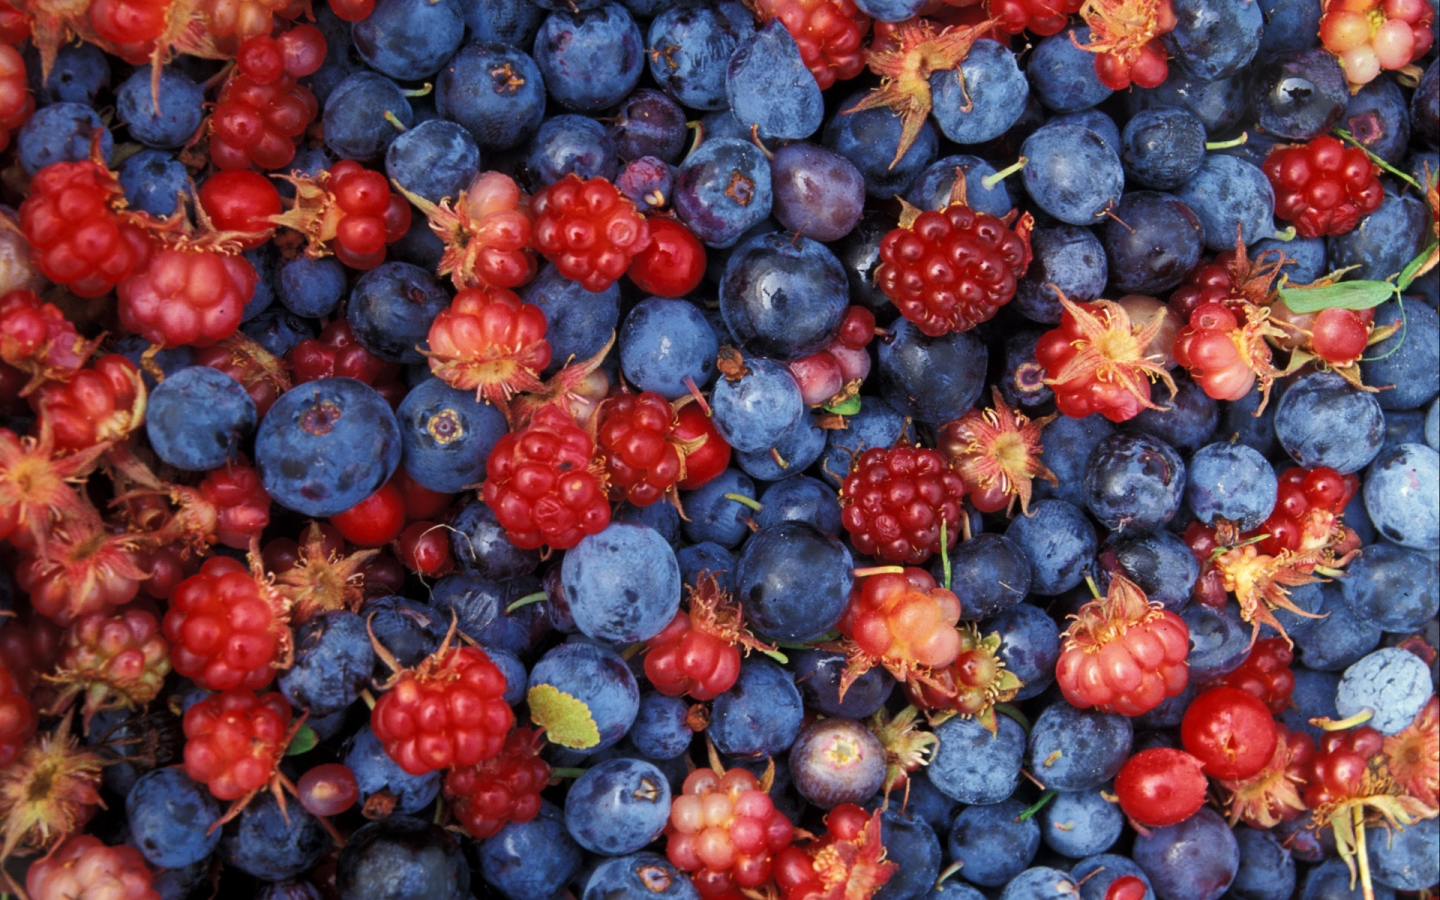 Alaska wild berries for 1440 x 900 widescreen resolution